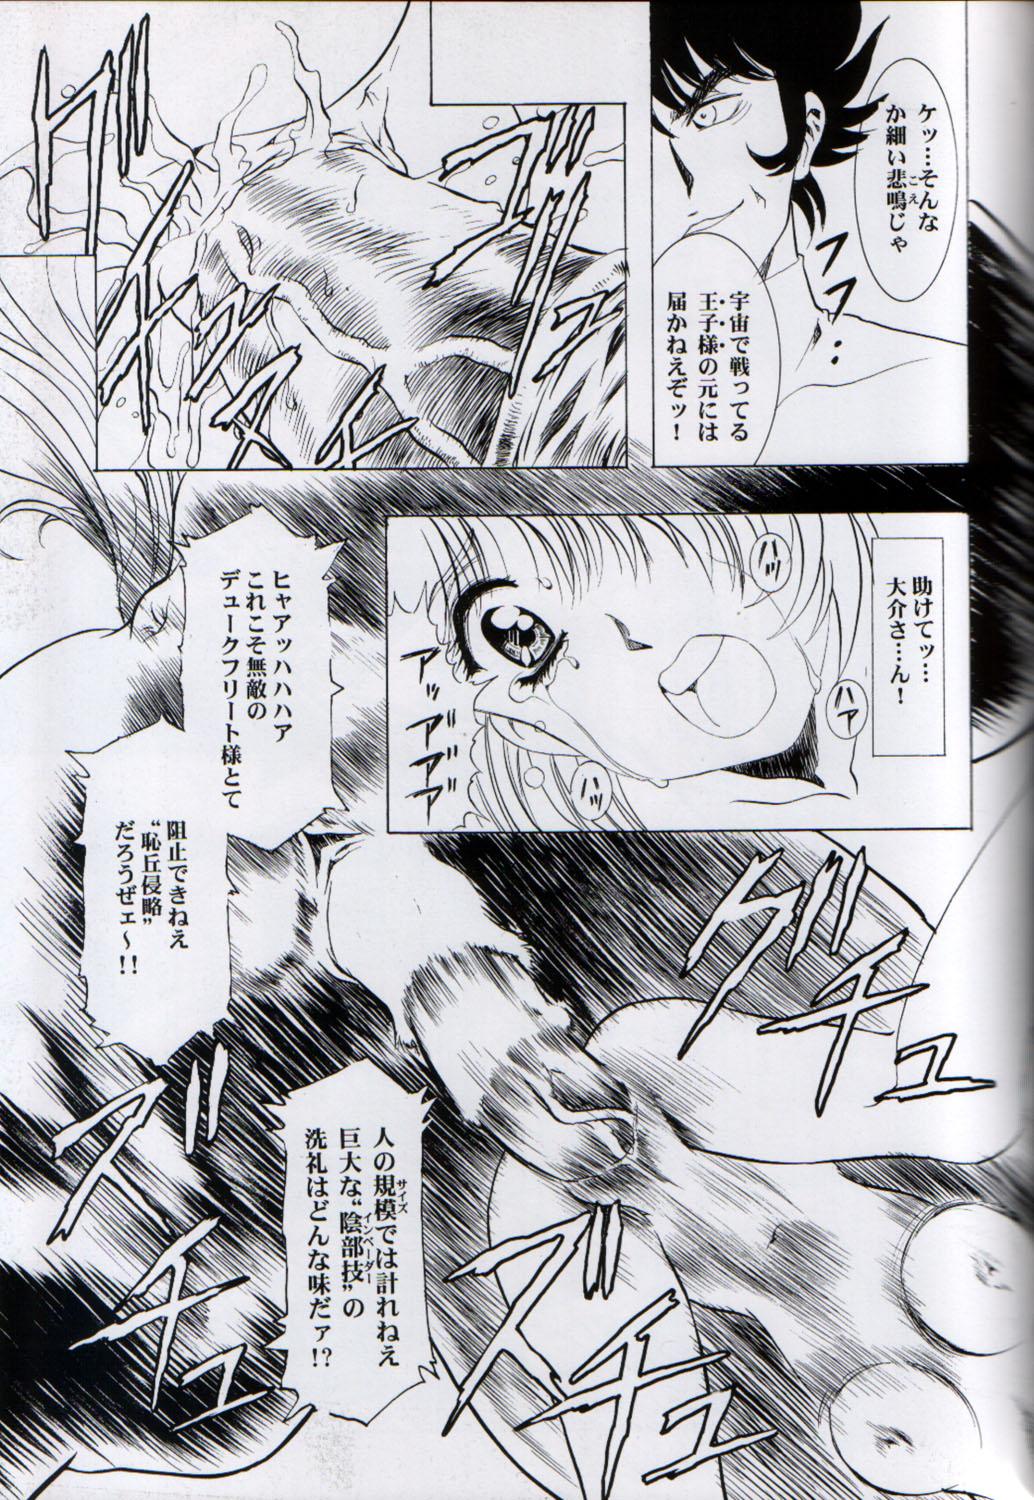 Three Some Ah...Natsukashi no Heroine Tachi!! 3 - Grendizer Nipples - Page 21